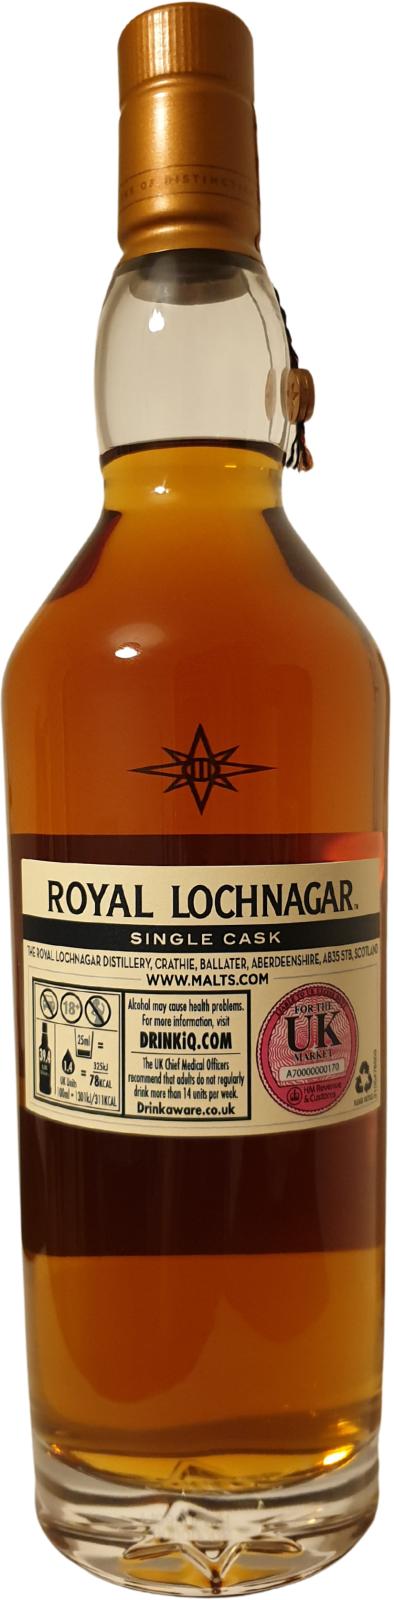 Royal Lochnagar 1994